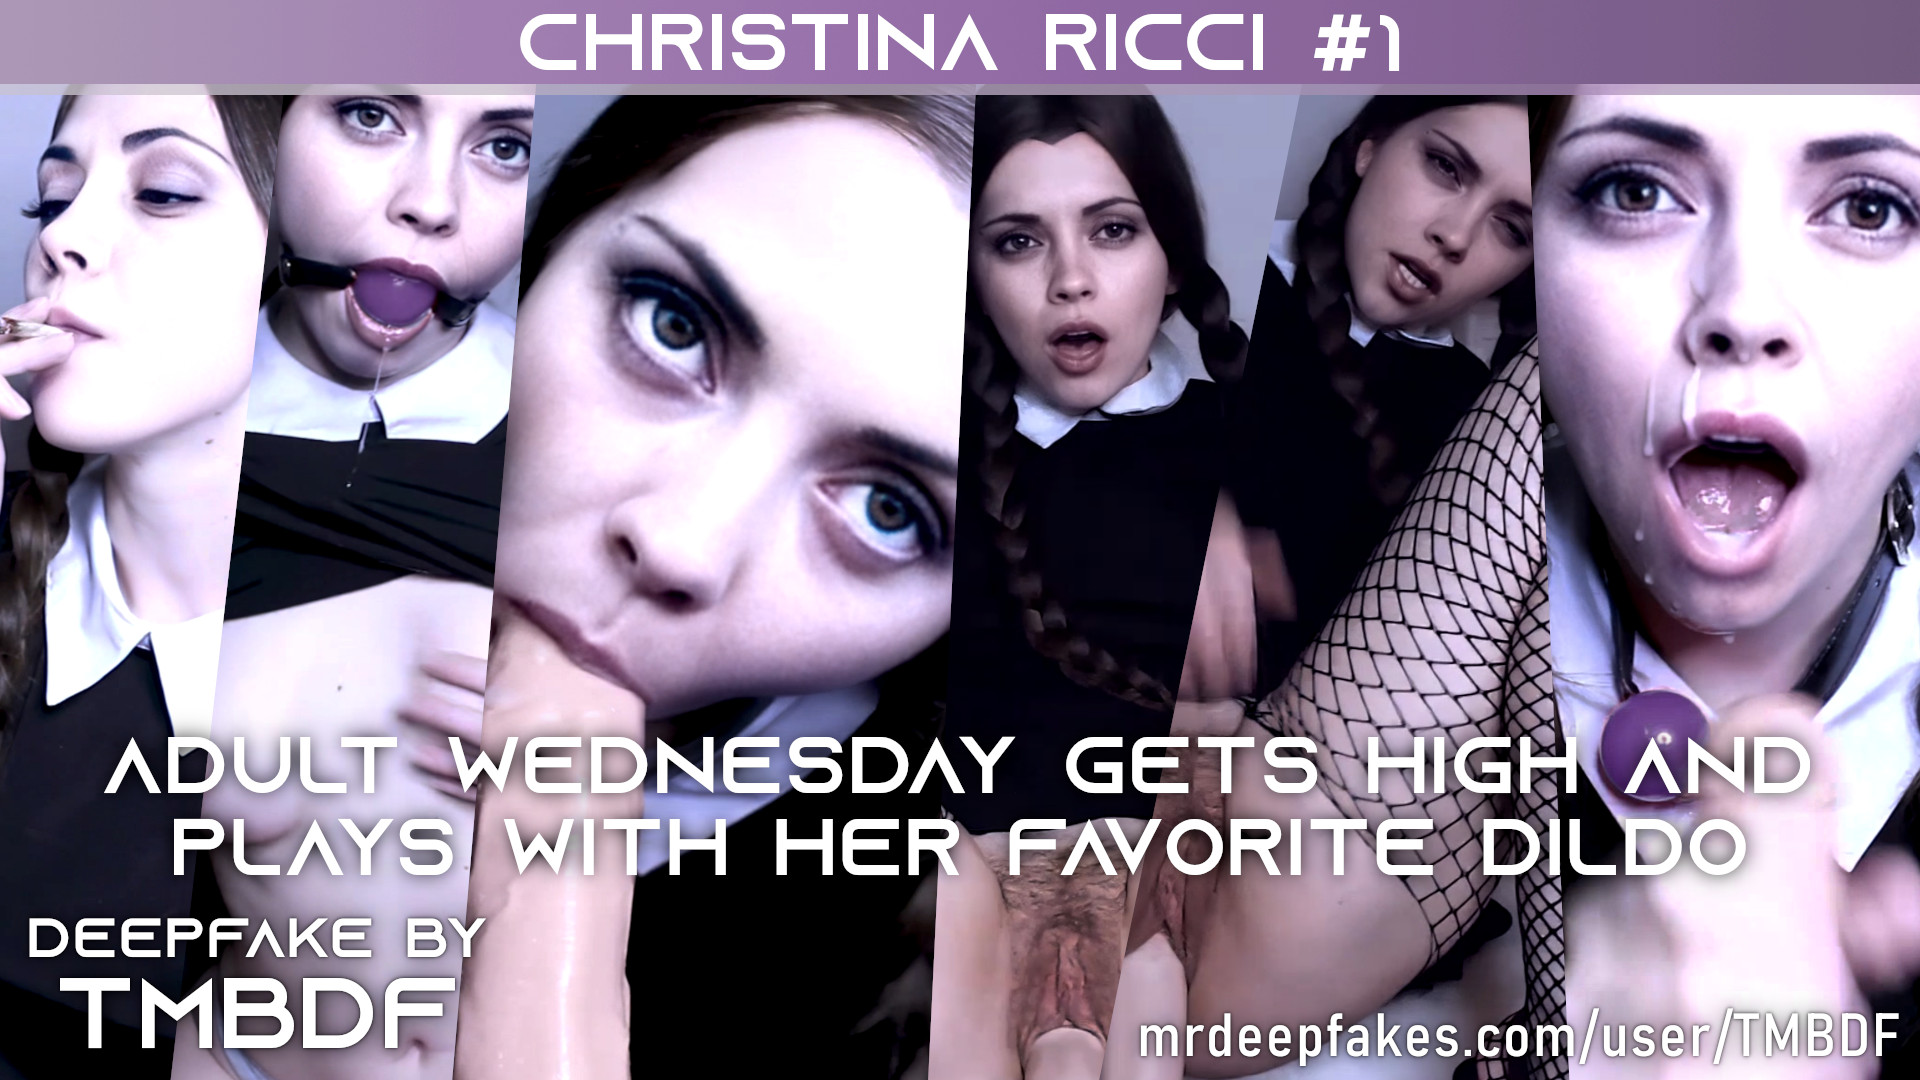 Christina Ricci #1 REMAKE - PREVIEW - Full version (23:10) in video description